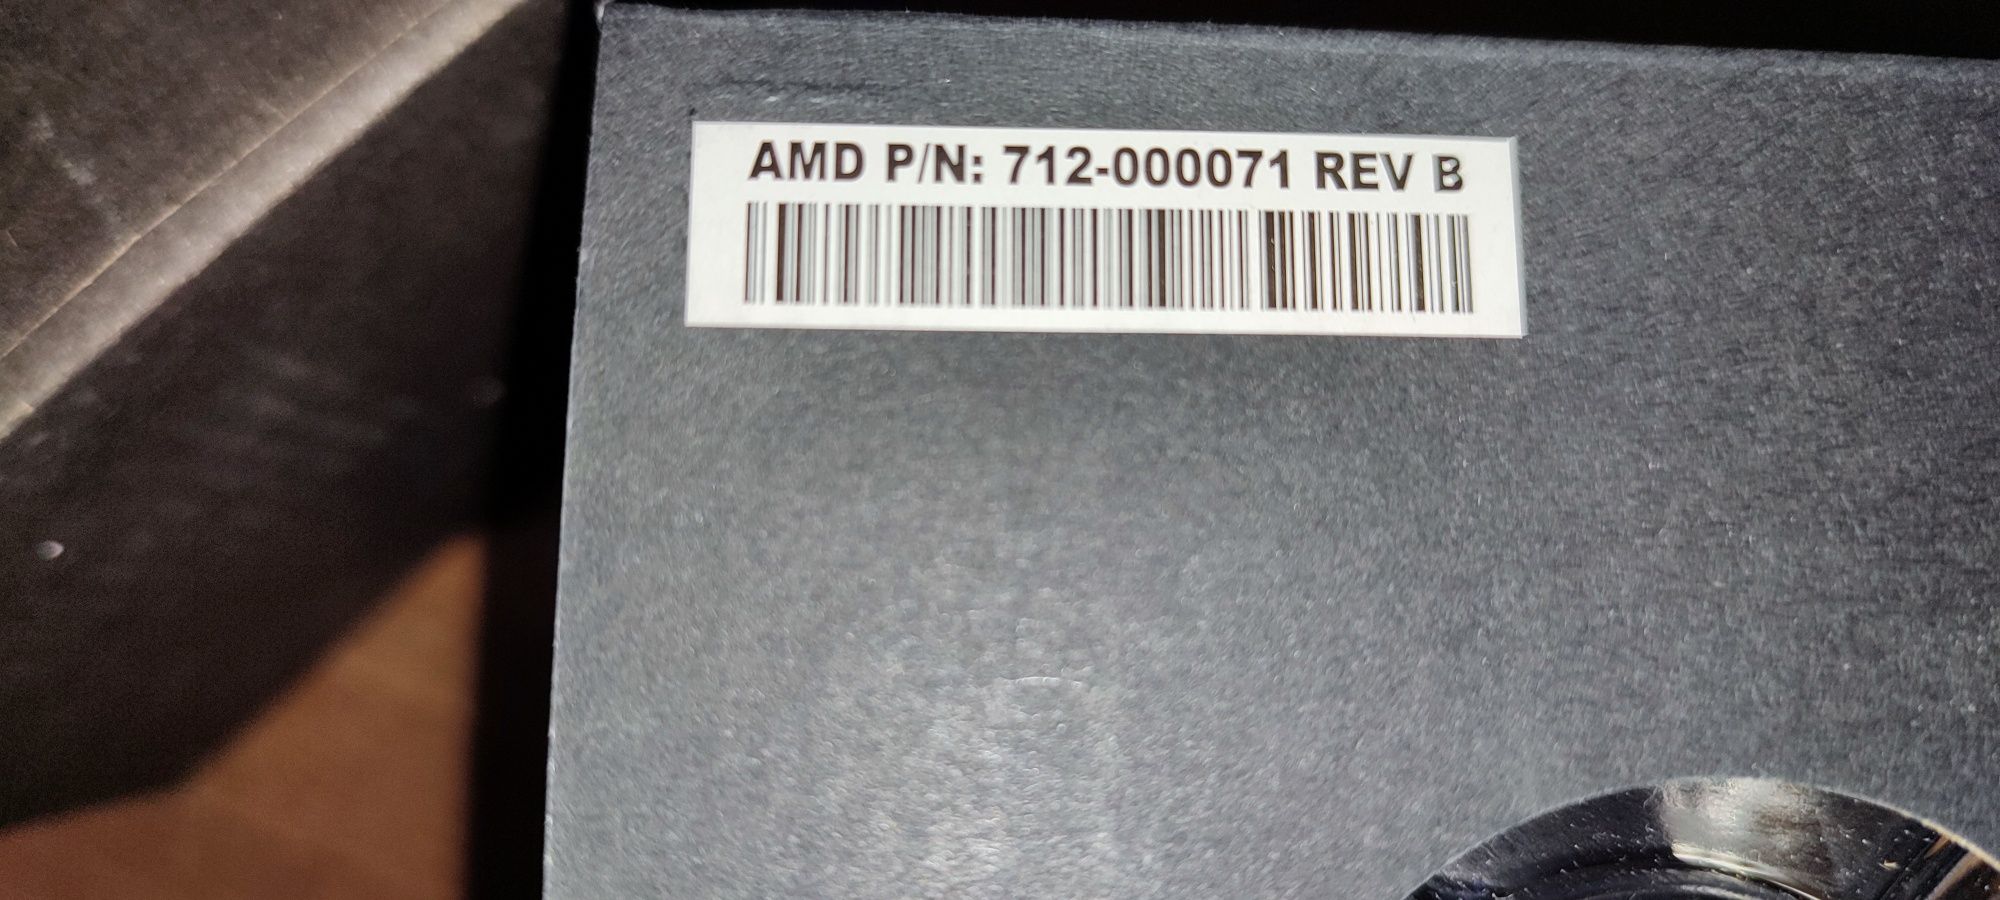 Cooler AMD original nou    712 - 000049 REV D